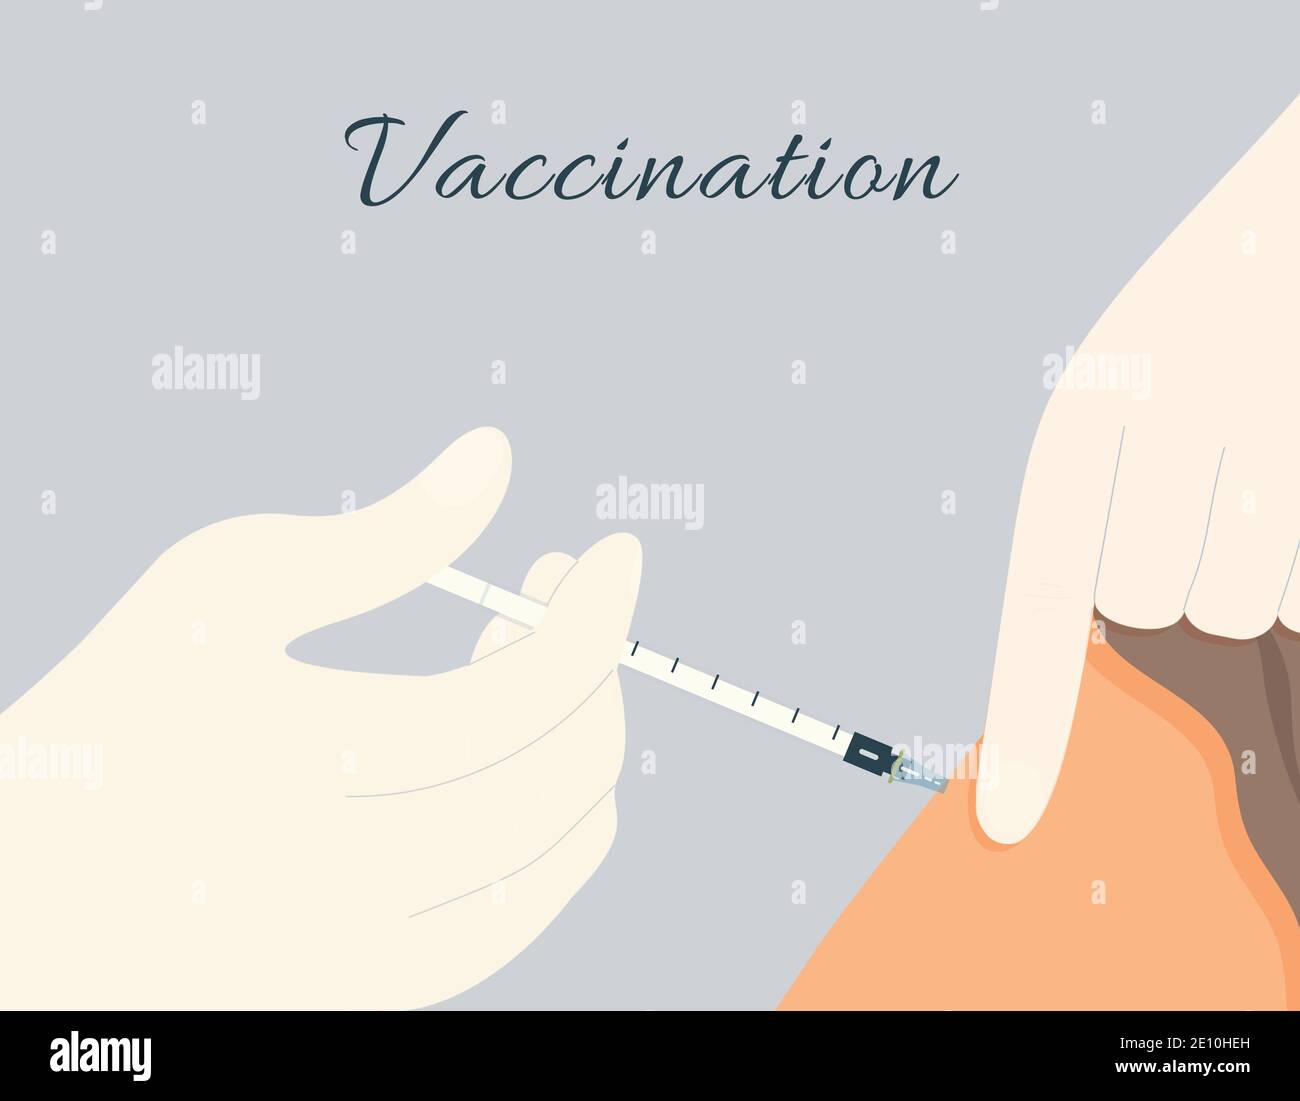 Immunizzazione con vaccino Covid-19 all'ospedale.medico o infermiere dare un dose di iniezione del vaccino virale con siringa sottile nel paziente primo piano del braccio Illustrazione Vettoriale